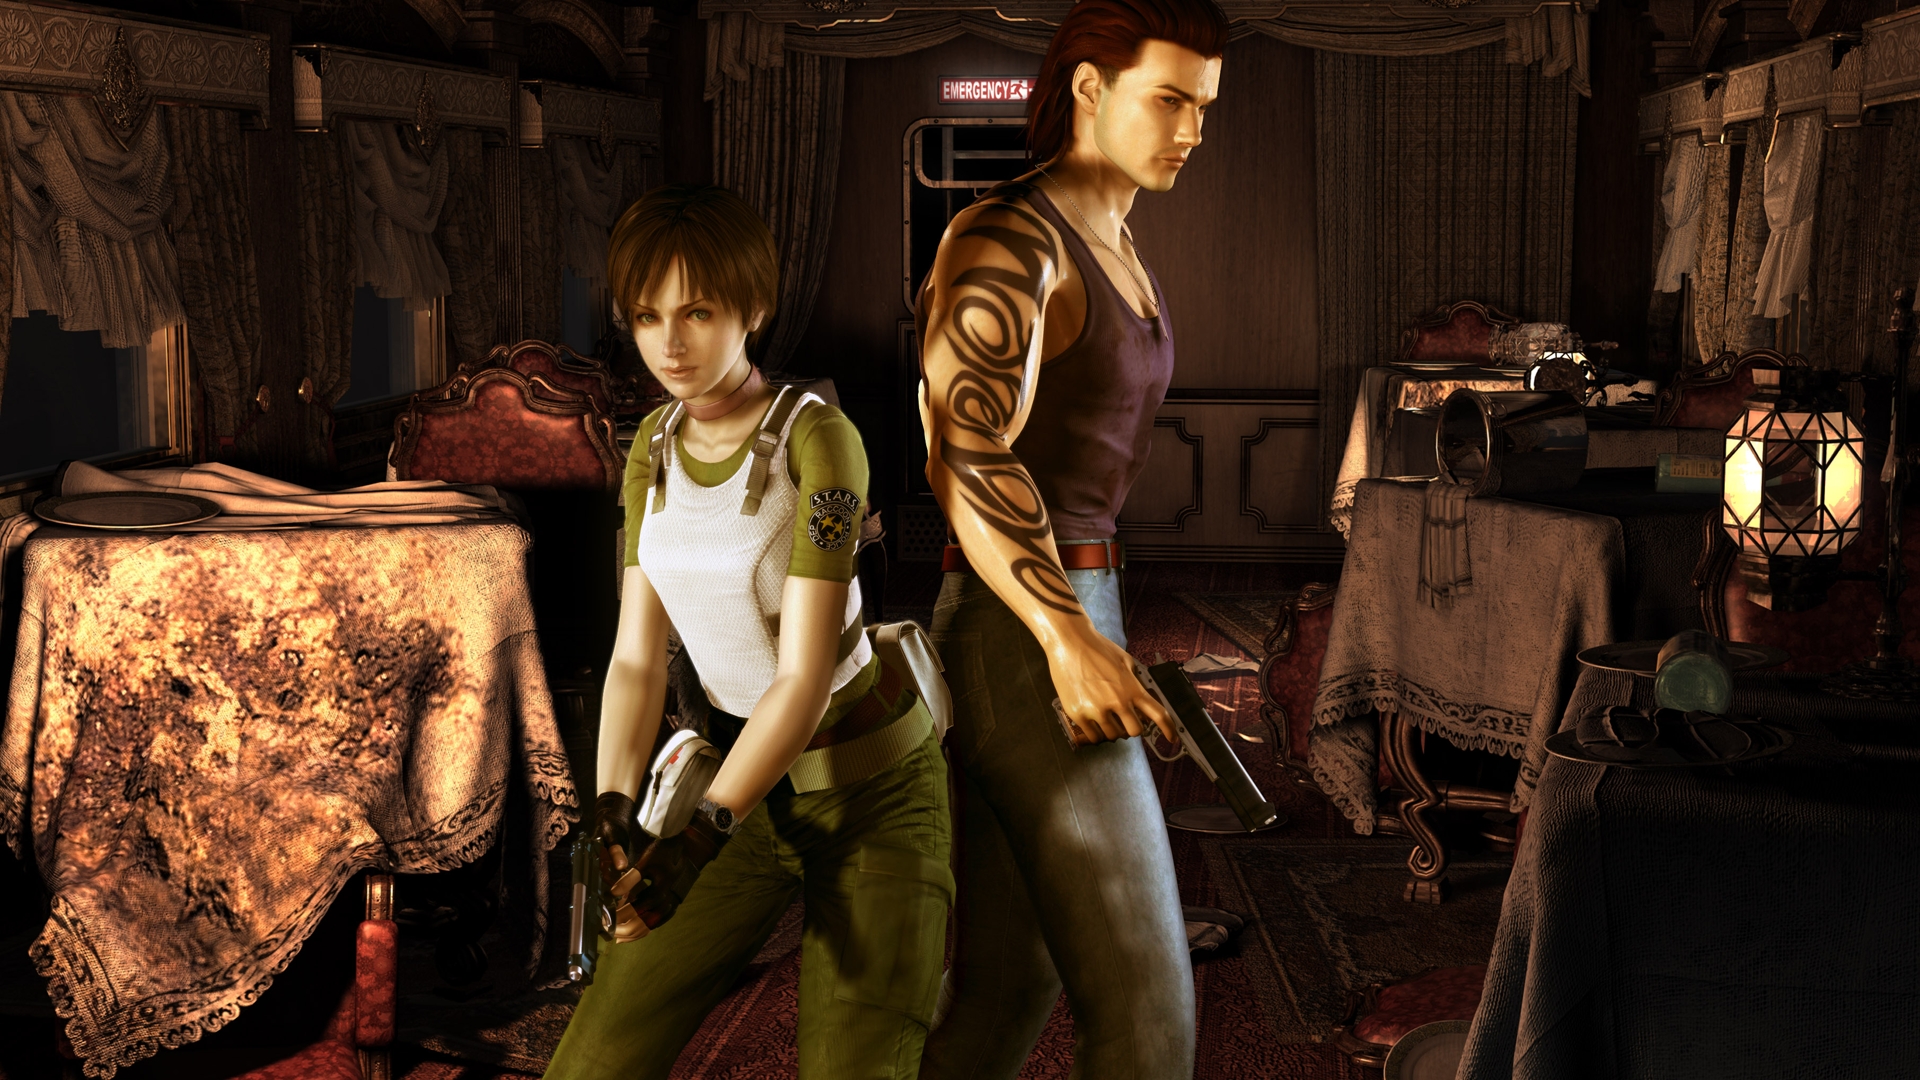 Revivendo a Nostalgia Do PS2: Resident Evil-Code-Veronica X Ps2 Dublado BR